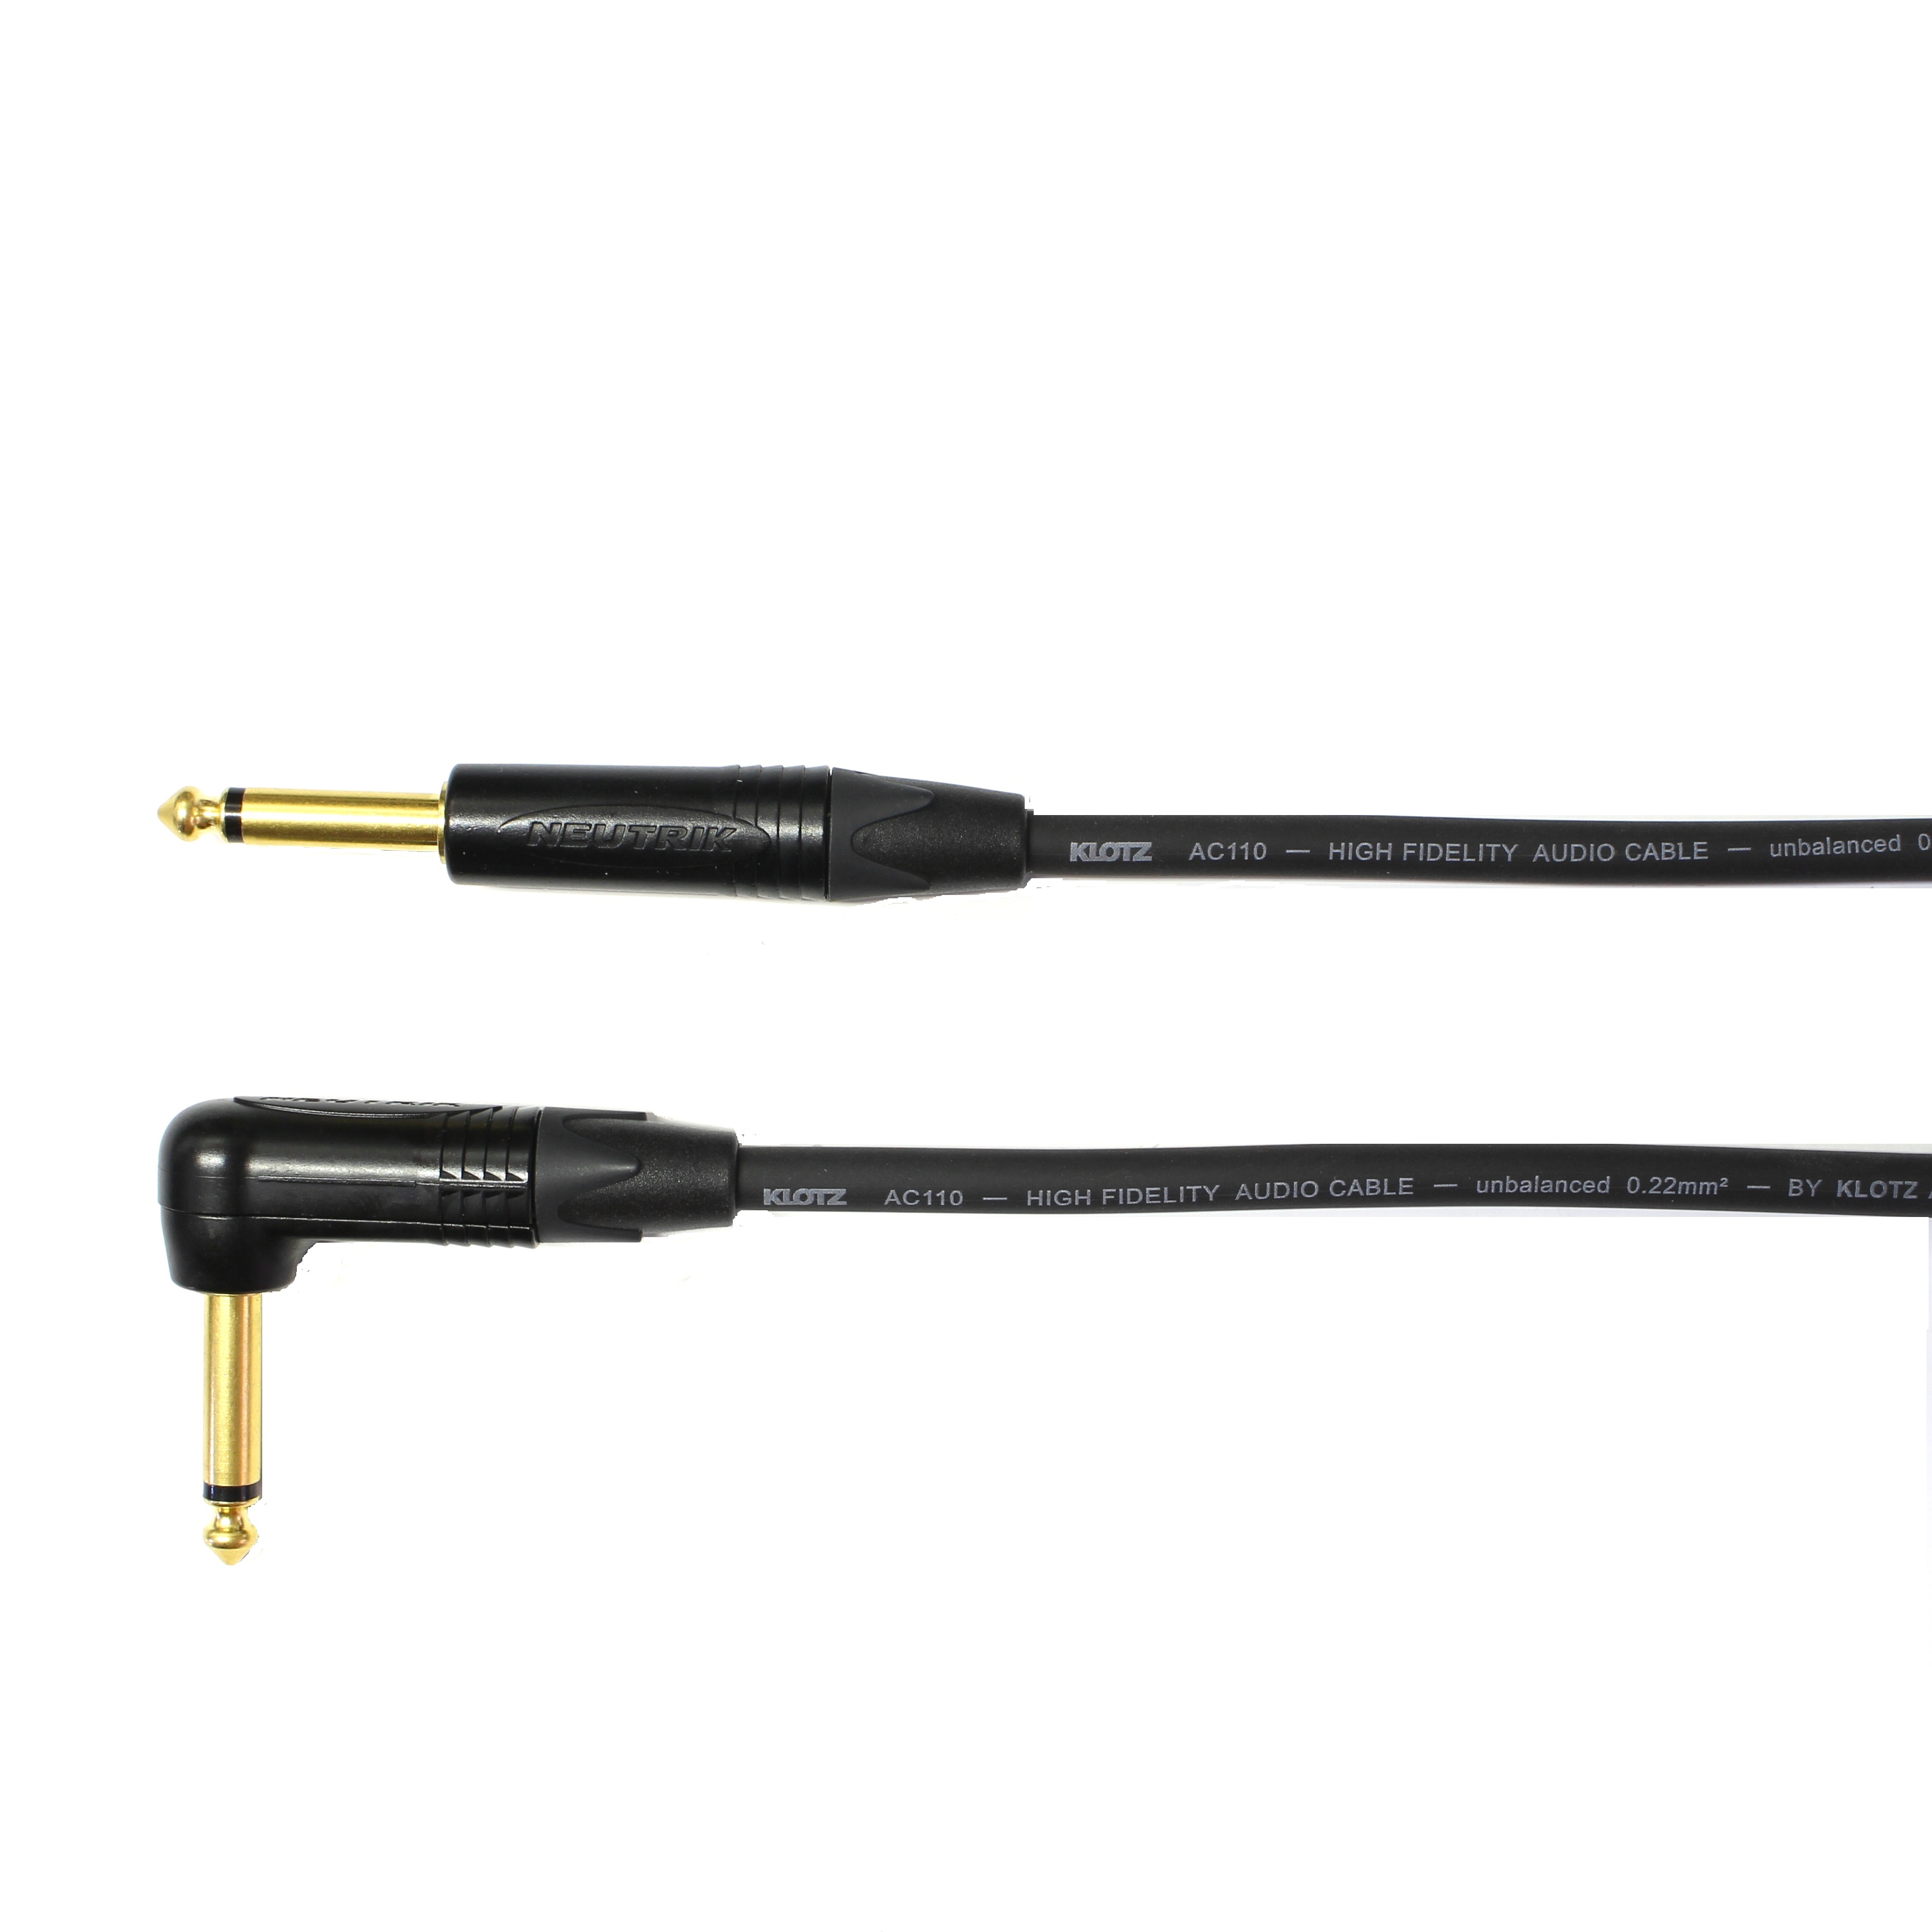 Kytarový kabel Jack 6,3 mono přímý/ Jack 6,3 mono úhlový, 50 cm, AC110